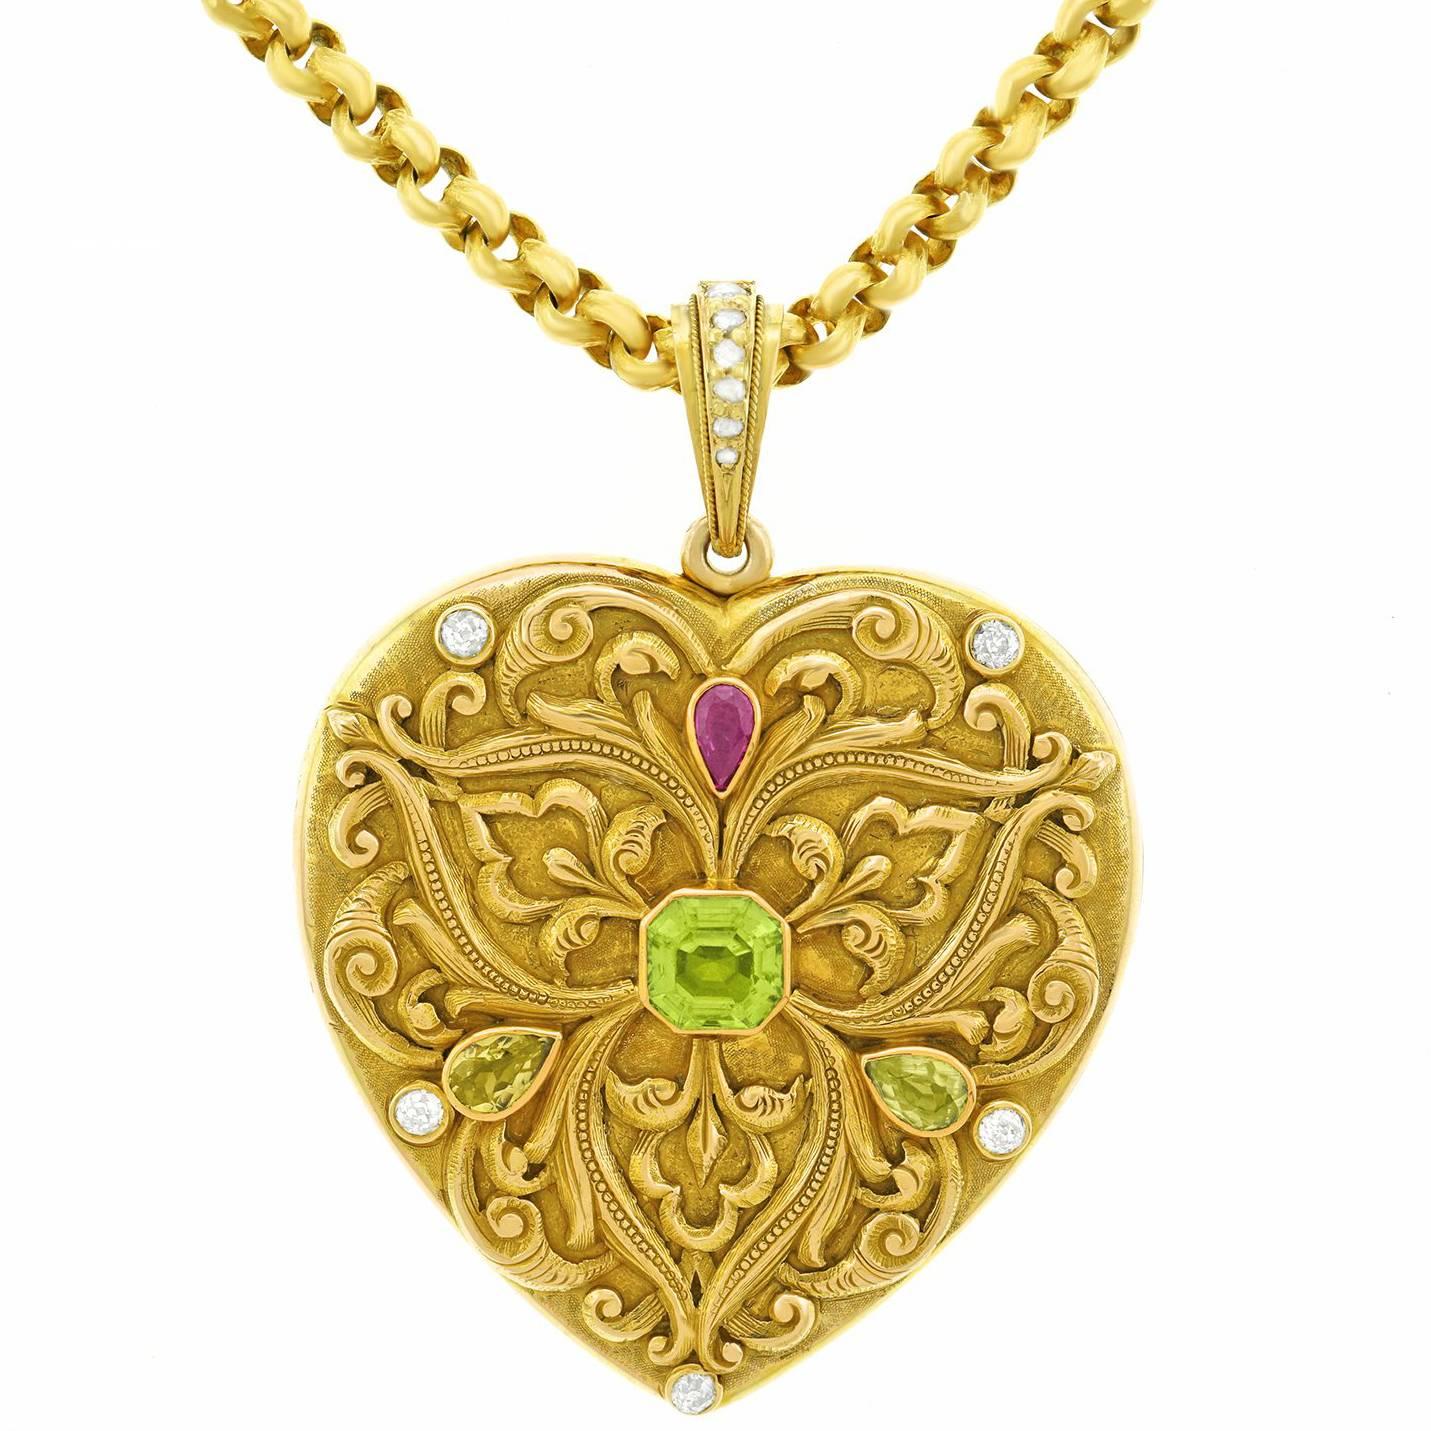 Spectacular Renaissance Revival Gold Heart Locket